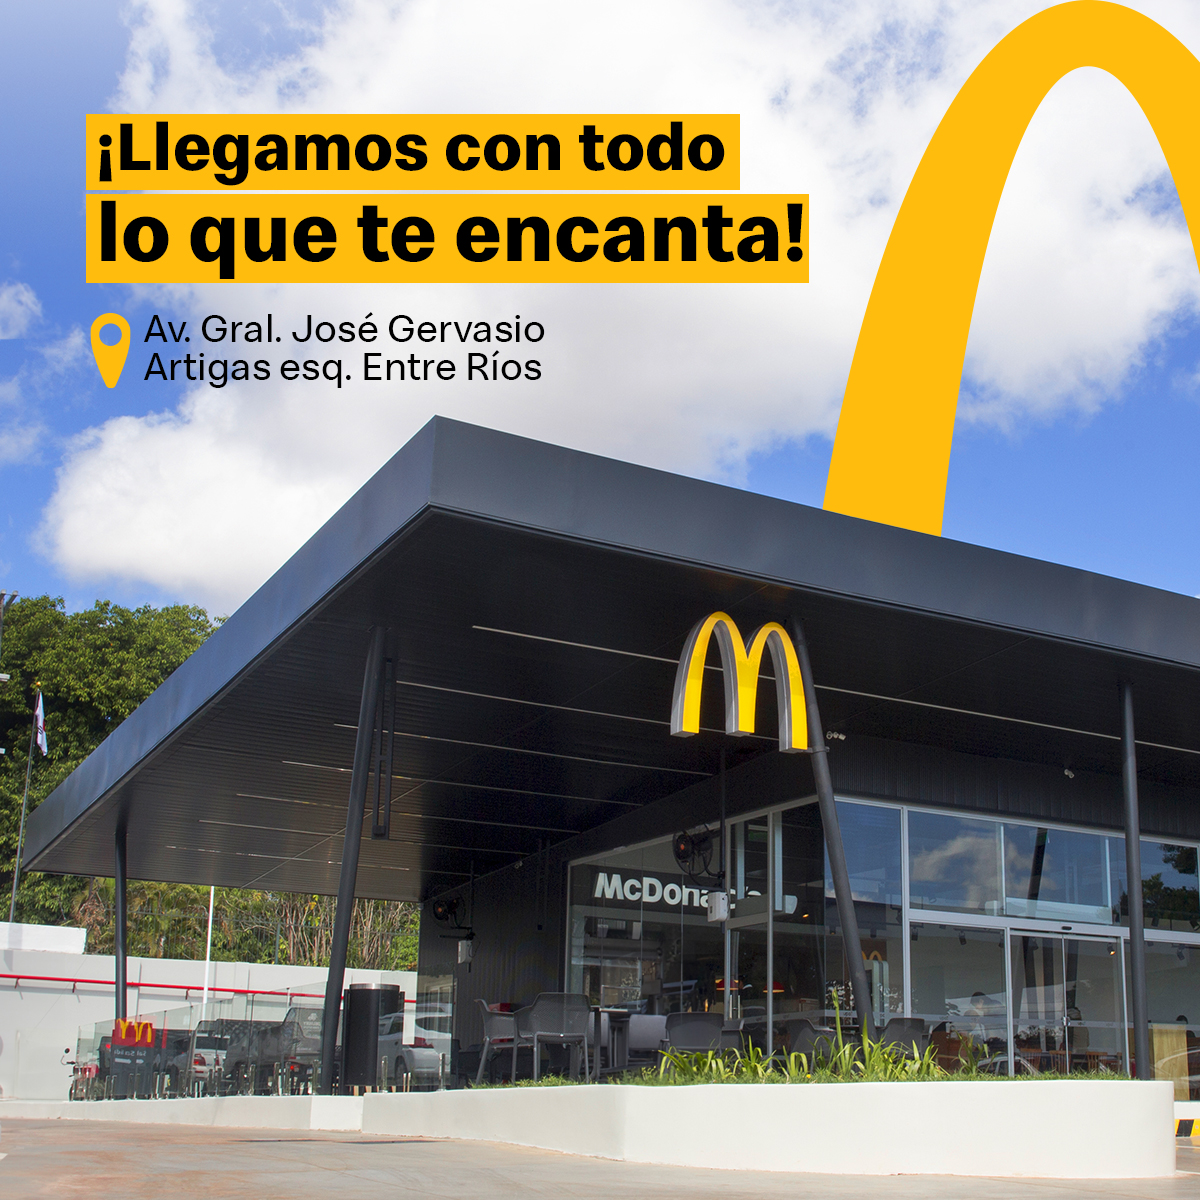 ¡Vení a conocer nuestro nuevo restaurante! 🎉❤️ Pasá por el nuevo McDonald’s ubicado en📍 Av. Gral. José Gervasio Artigas esq. Entre Ríos 😁 y disfrutá de las papas más famosas del mundo con tus 🍔🍔🍔 favoritas.